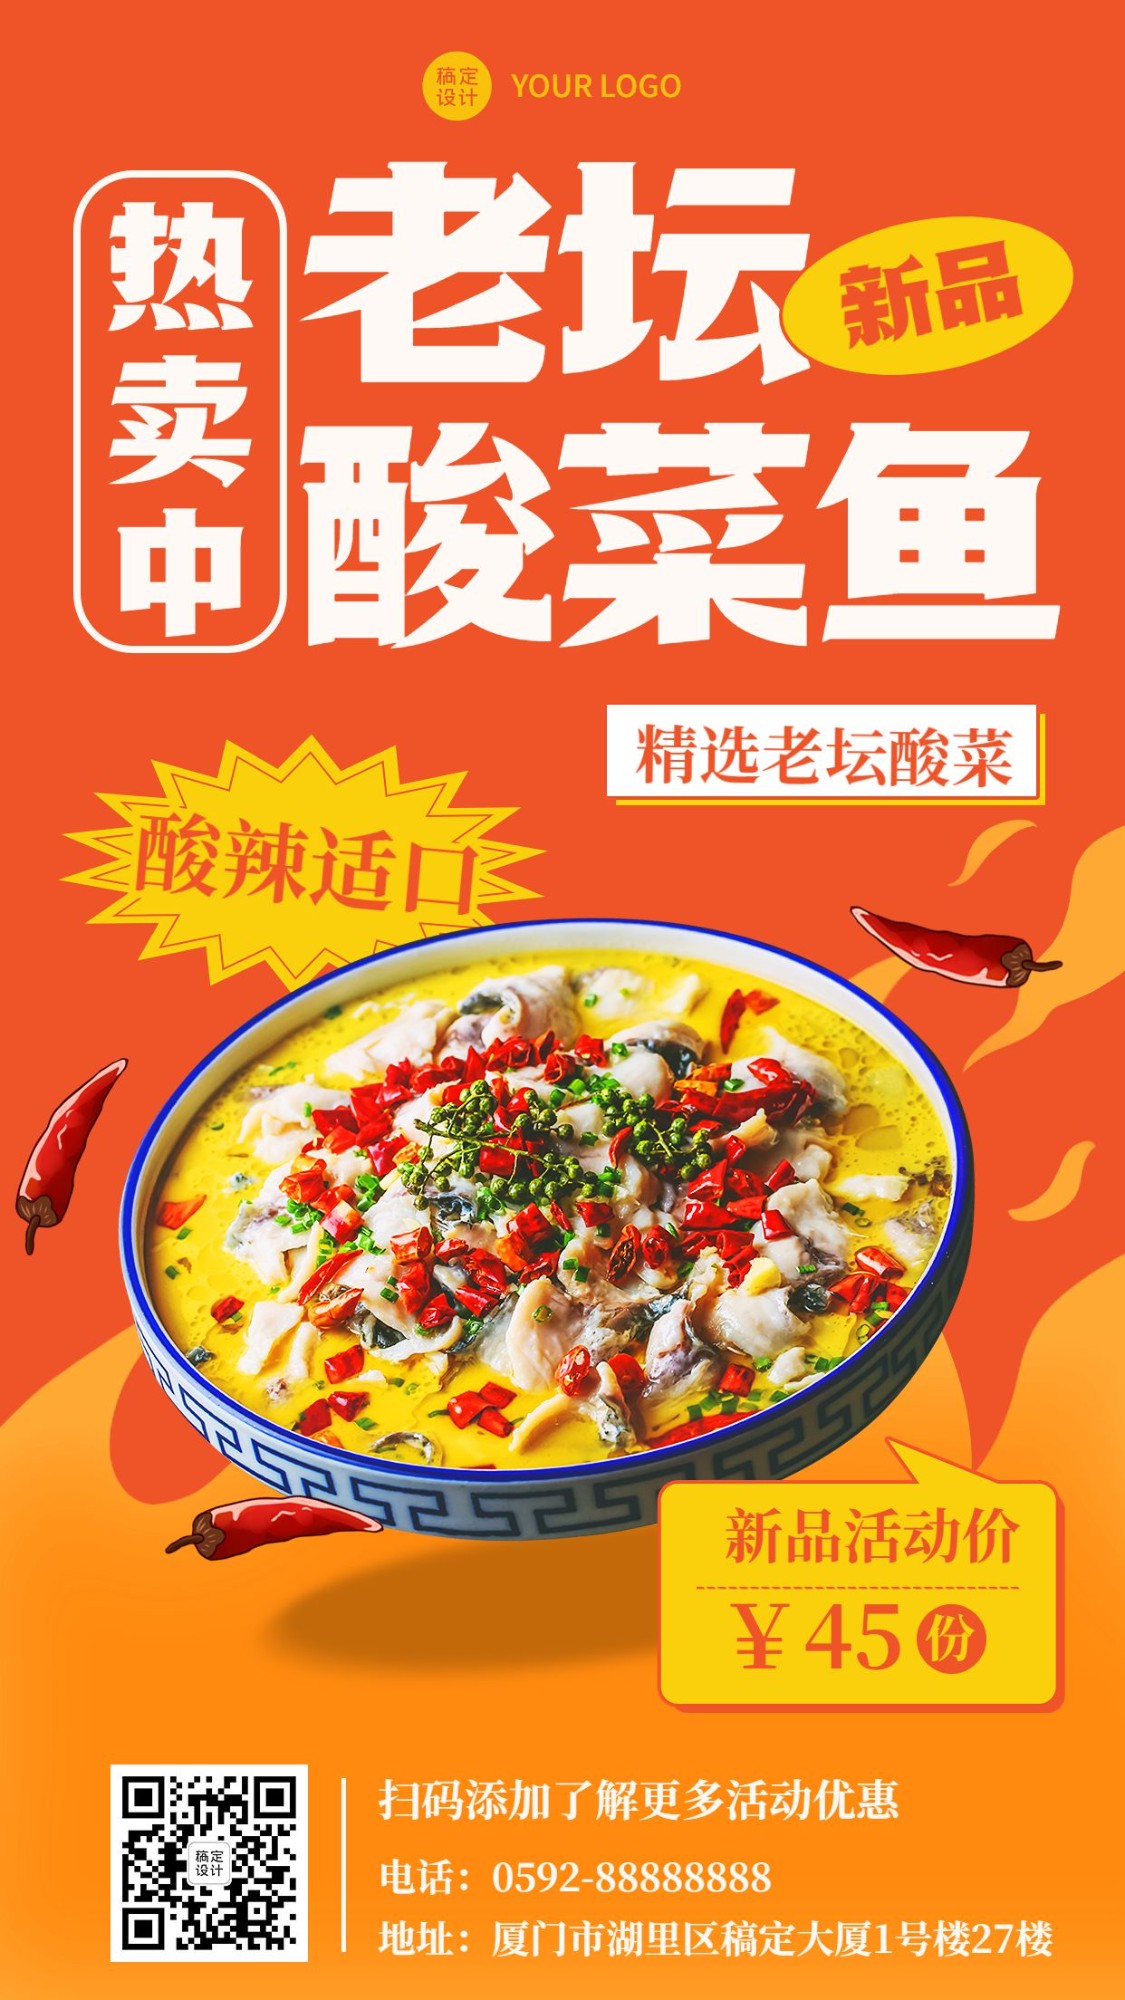 餐饮酸菜鱼新品上市营销手机海报预览效果